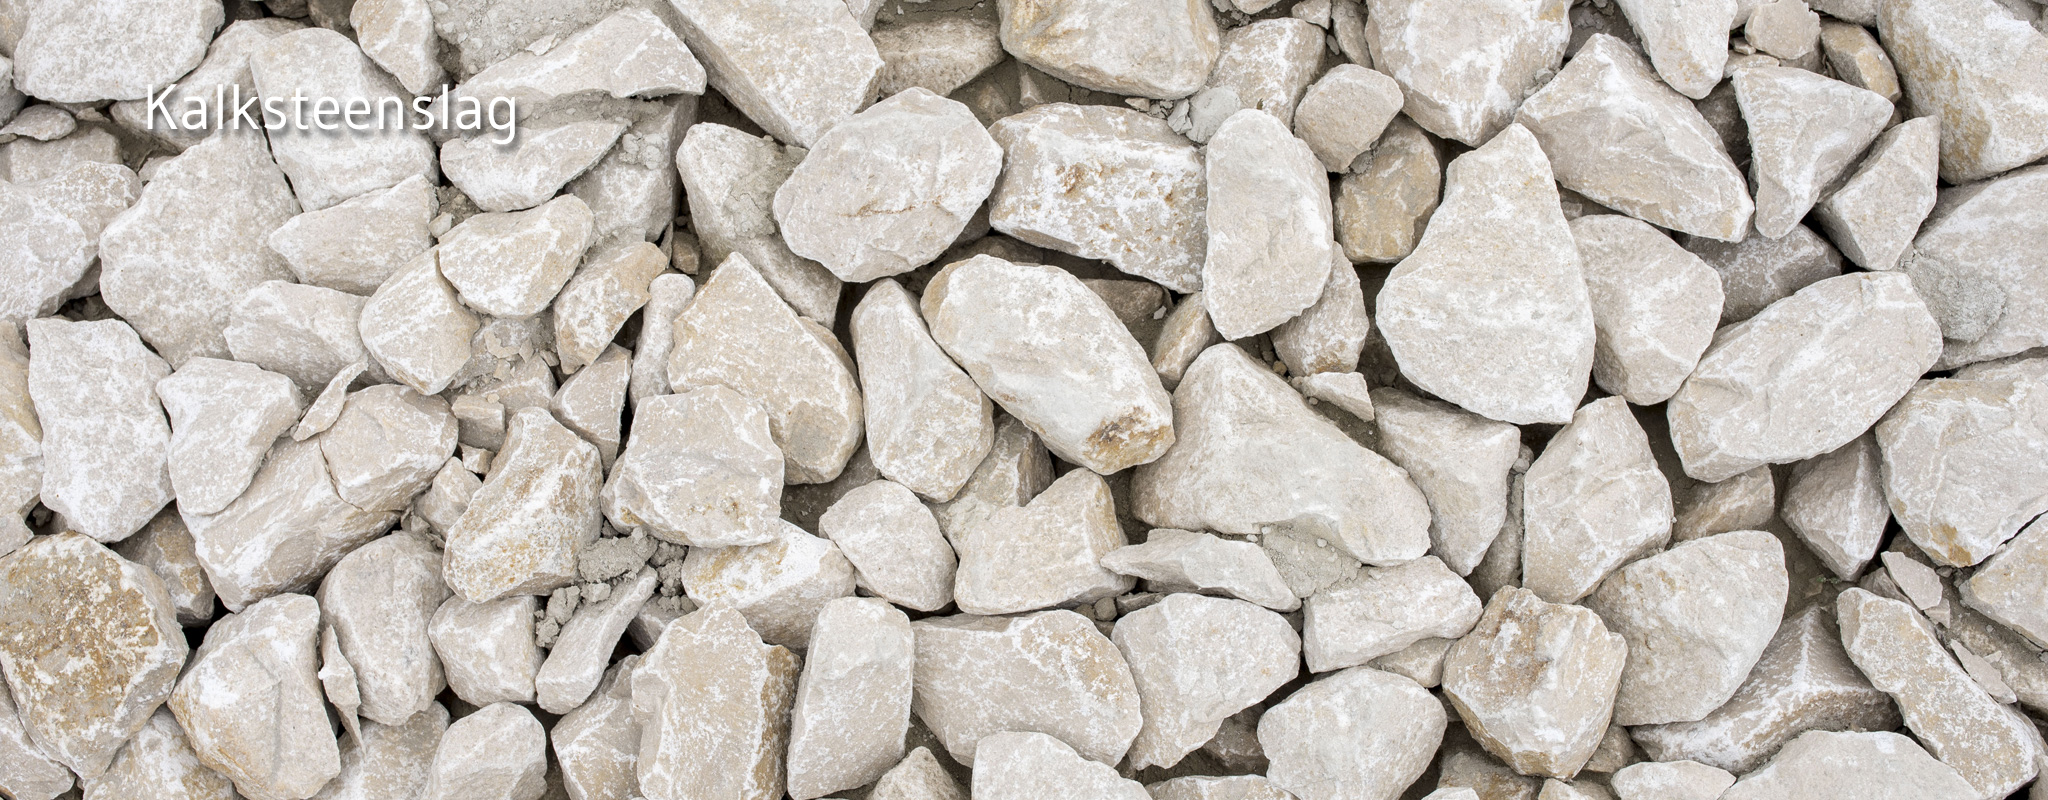 Kalksteenslag te koop bij remondis depoorter